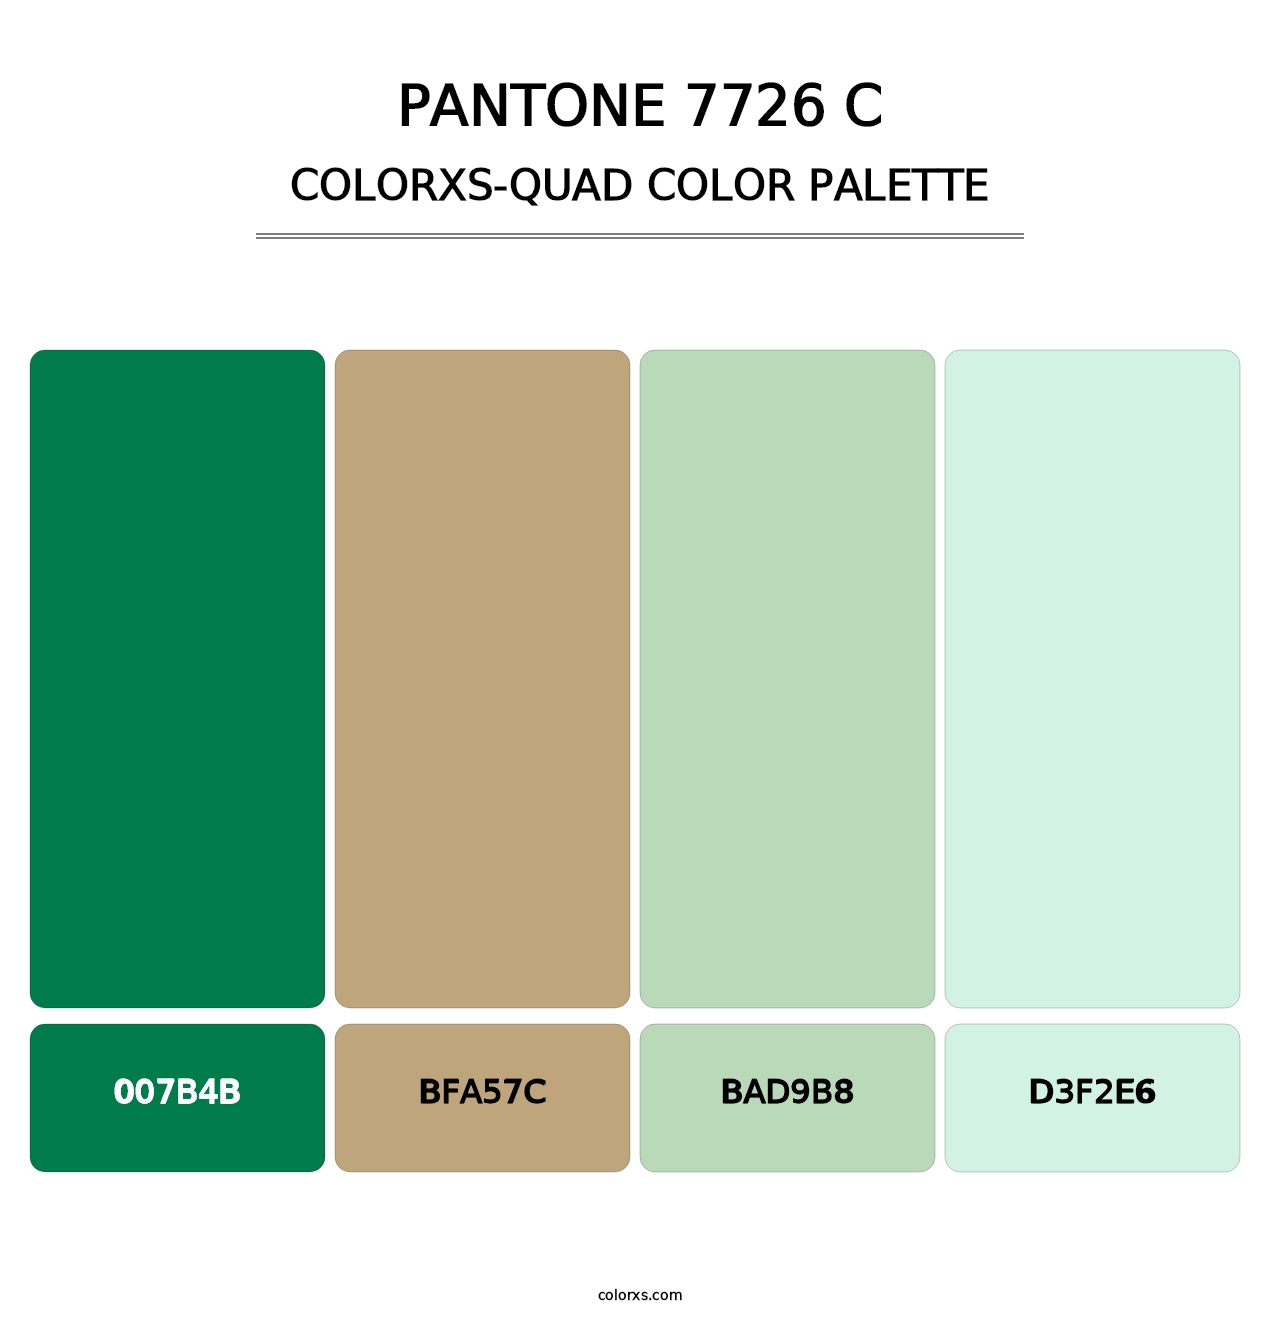 PANTONE 7726 C - Colorxs Quad Palette